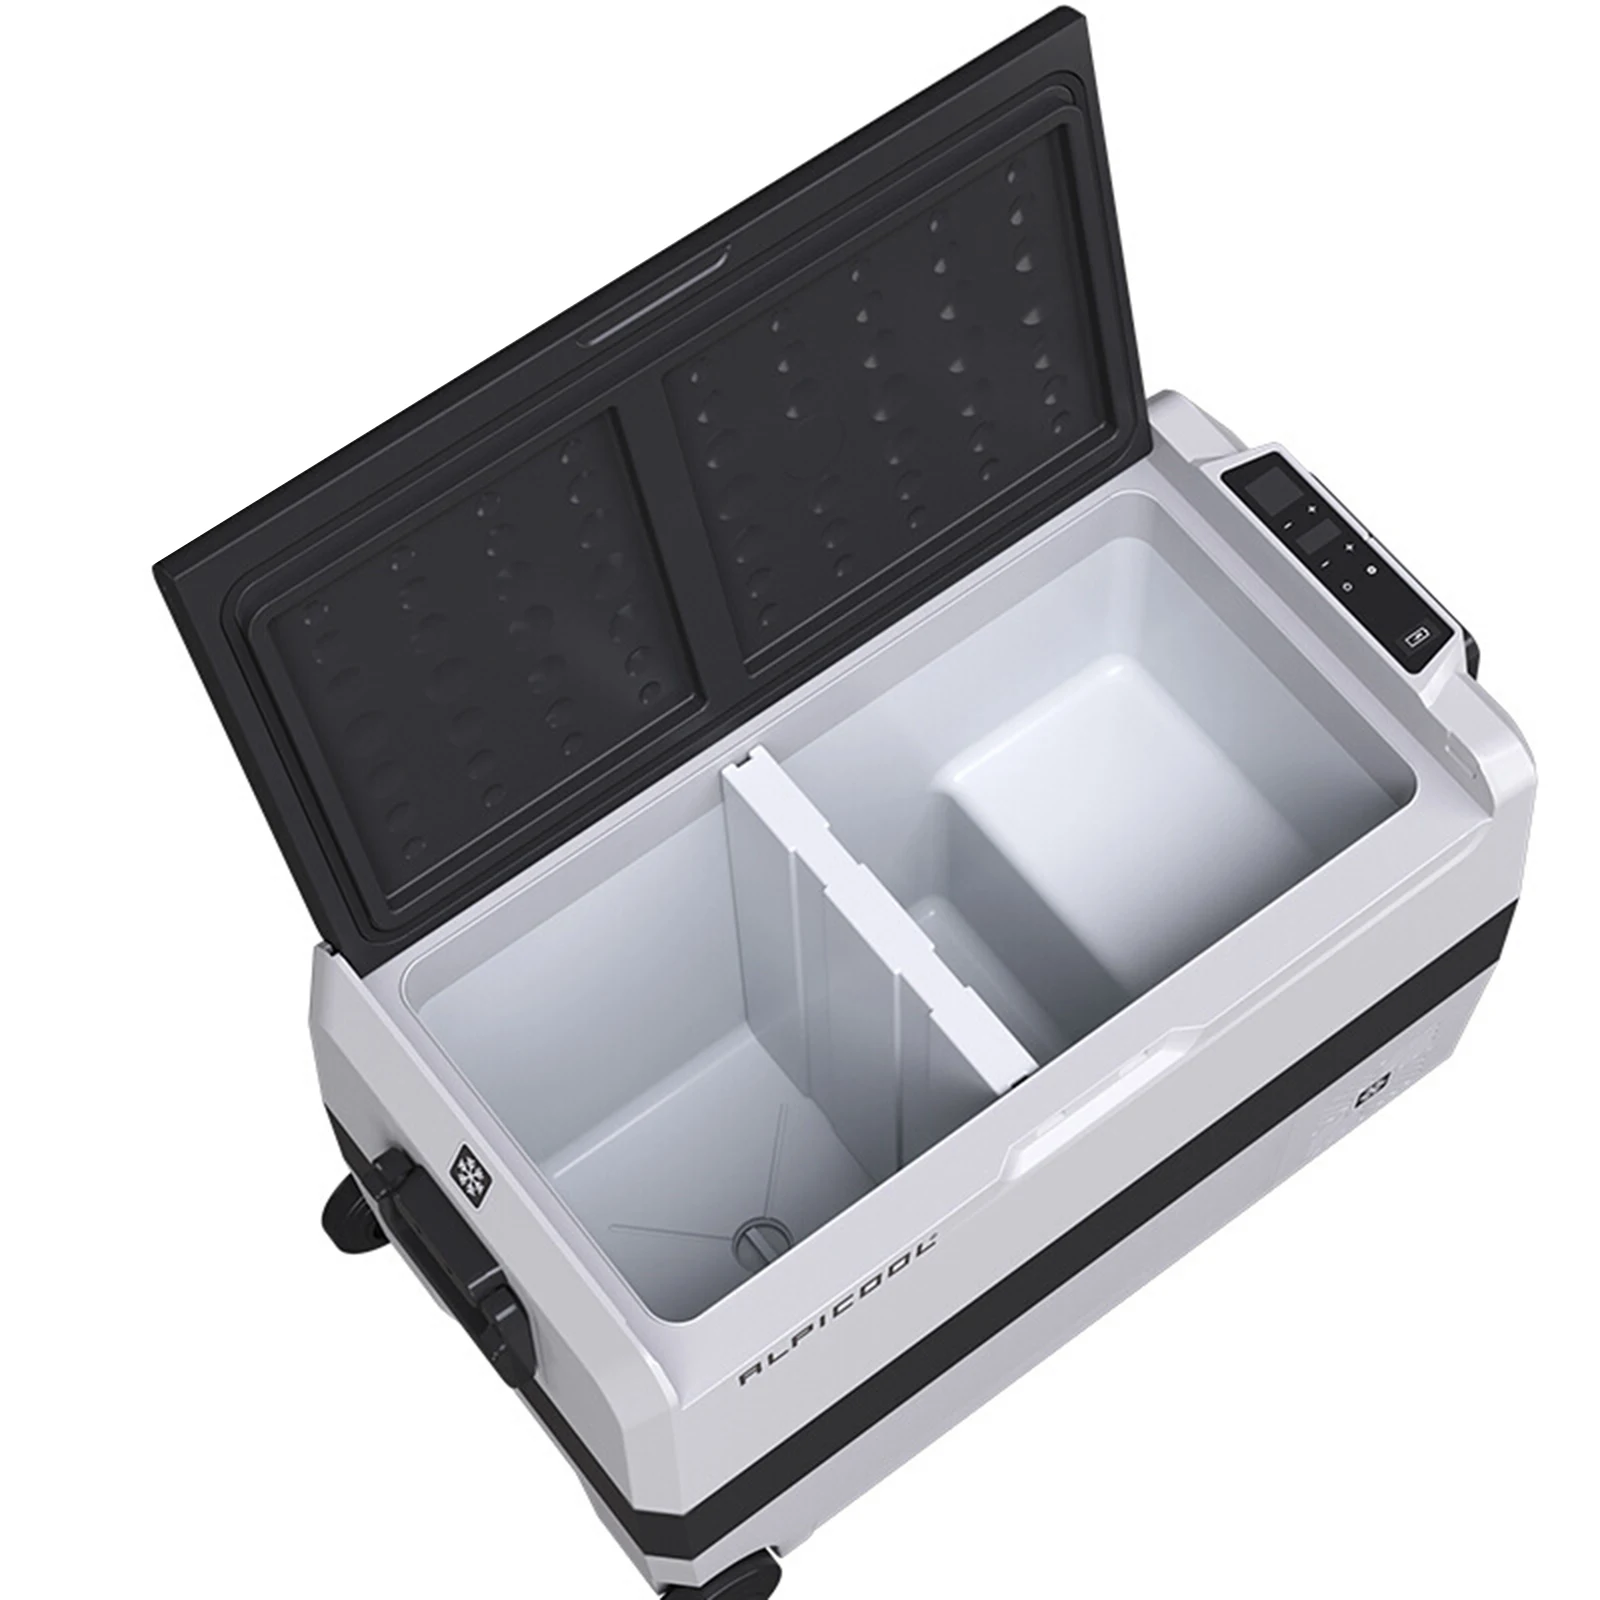 Portable Freezer 12 Volt Refrigerator Fridge for Car Home 12/24V DC and 100/240V AC Electric Compressor Cooler